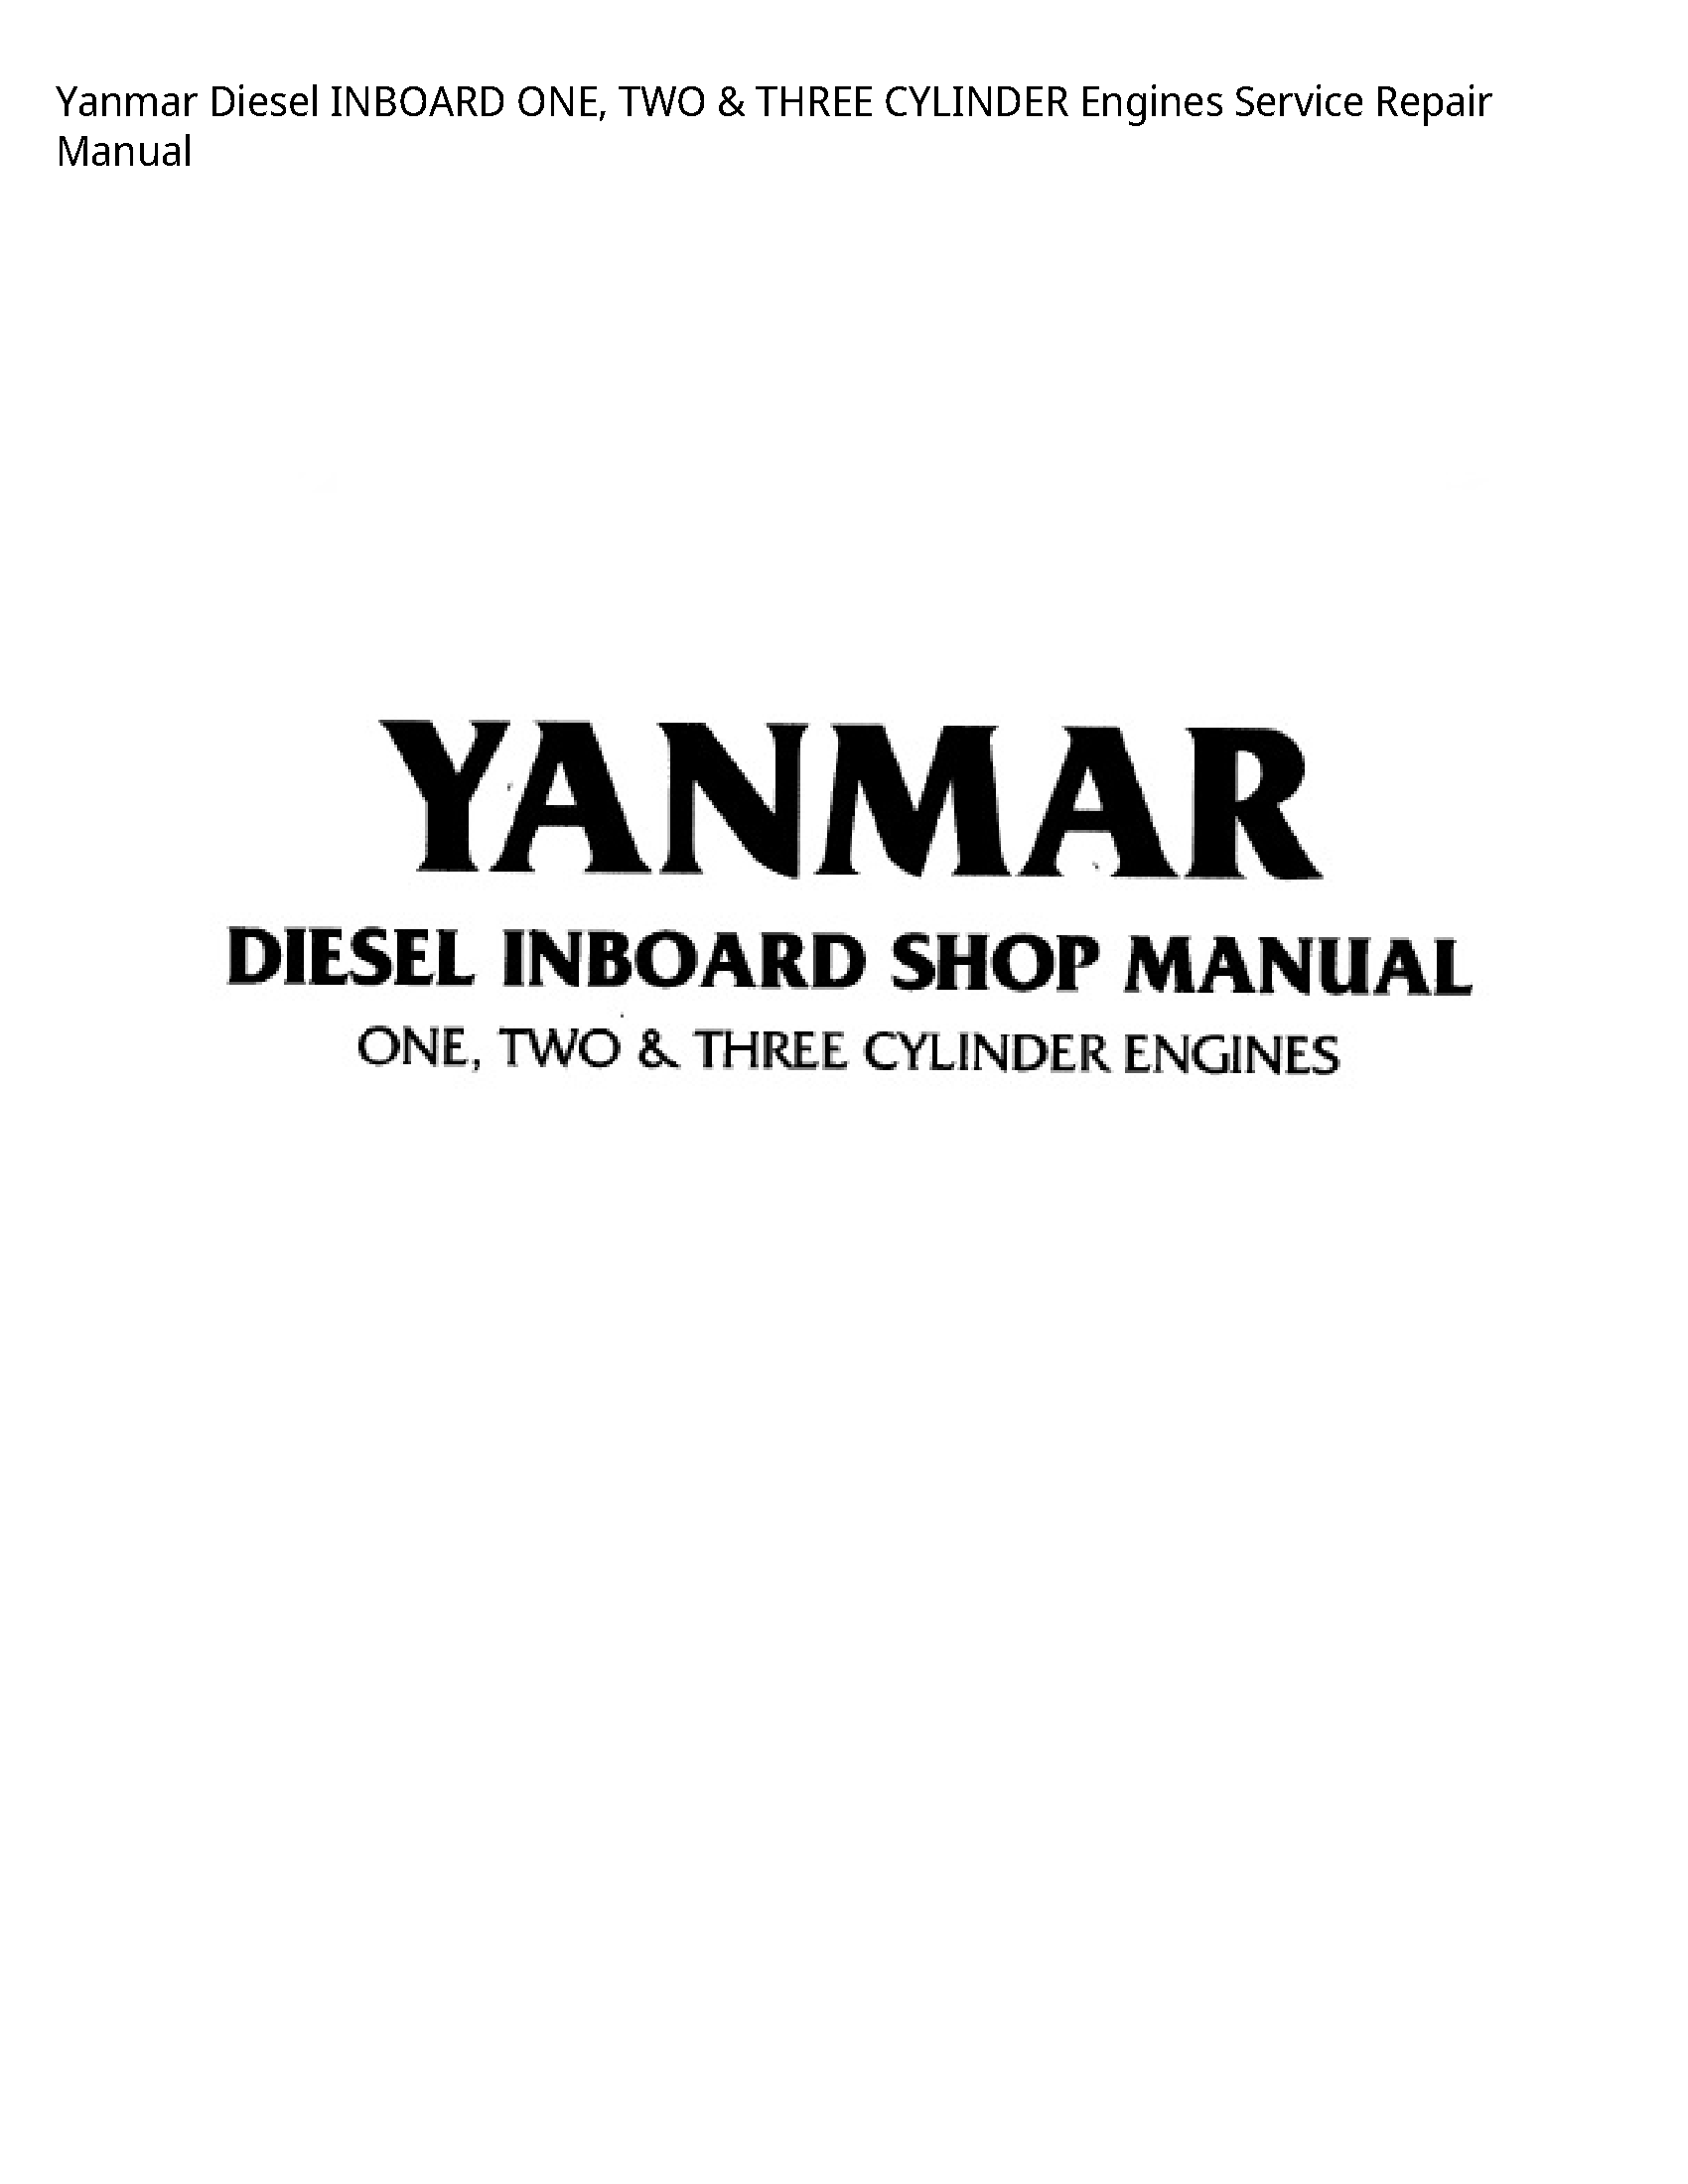 Yanmar Diesel INBOARD ONE manual